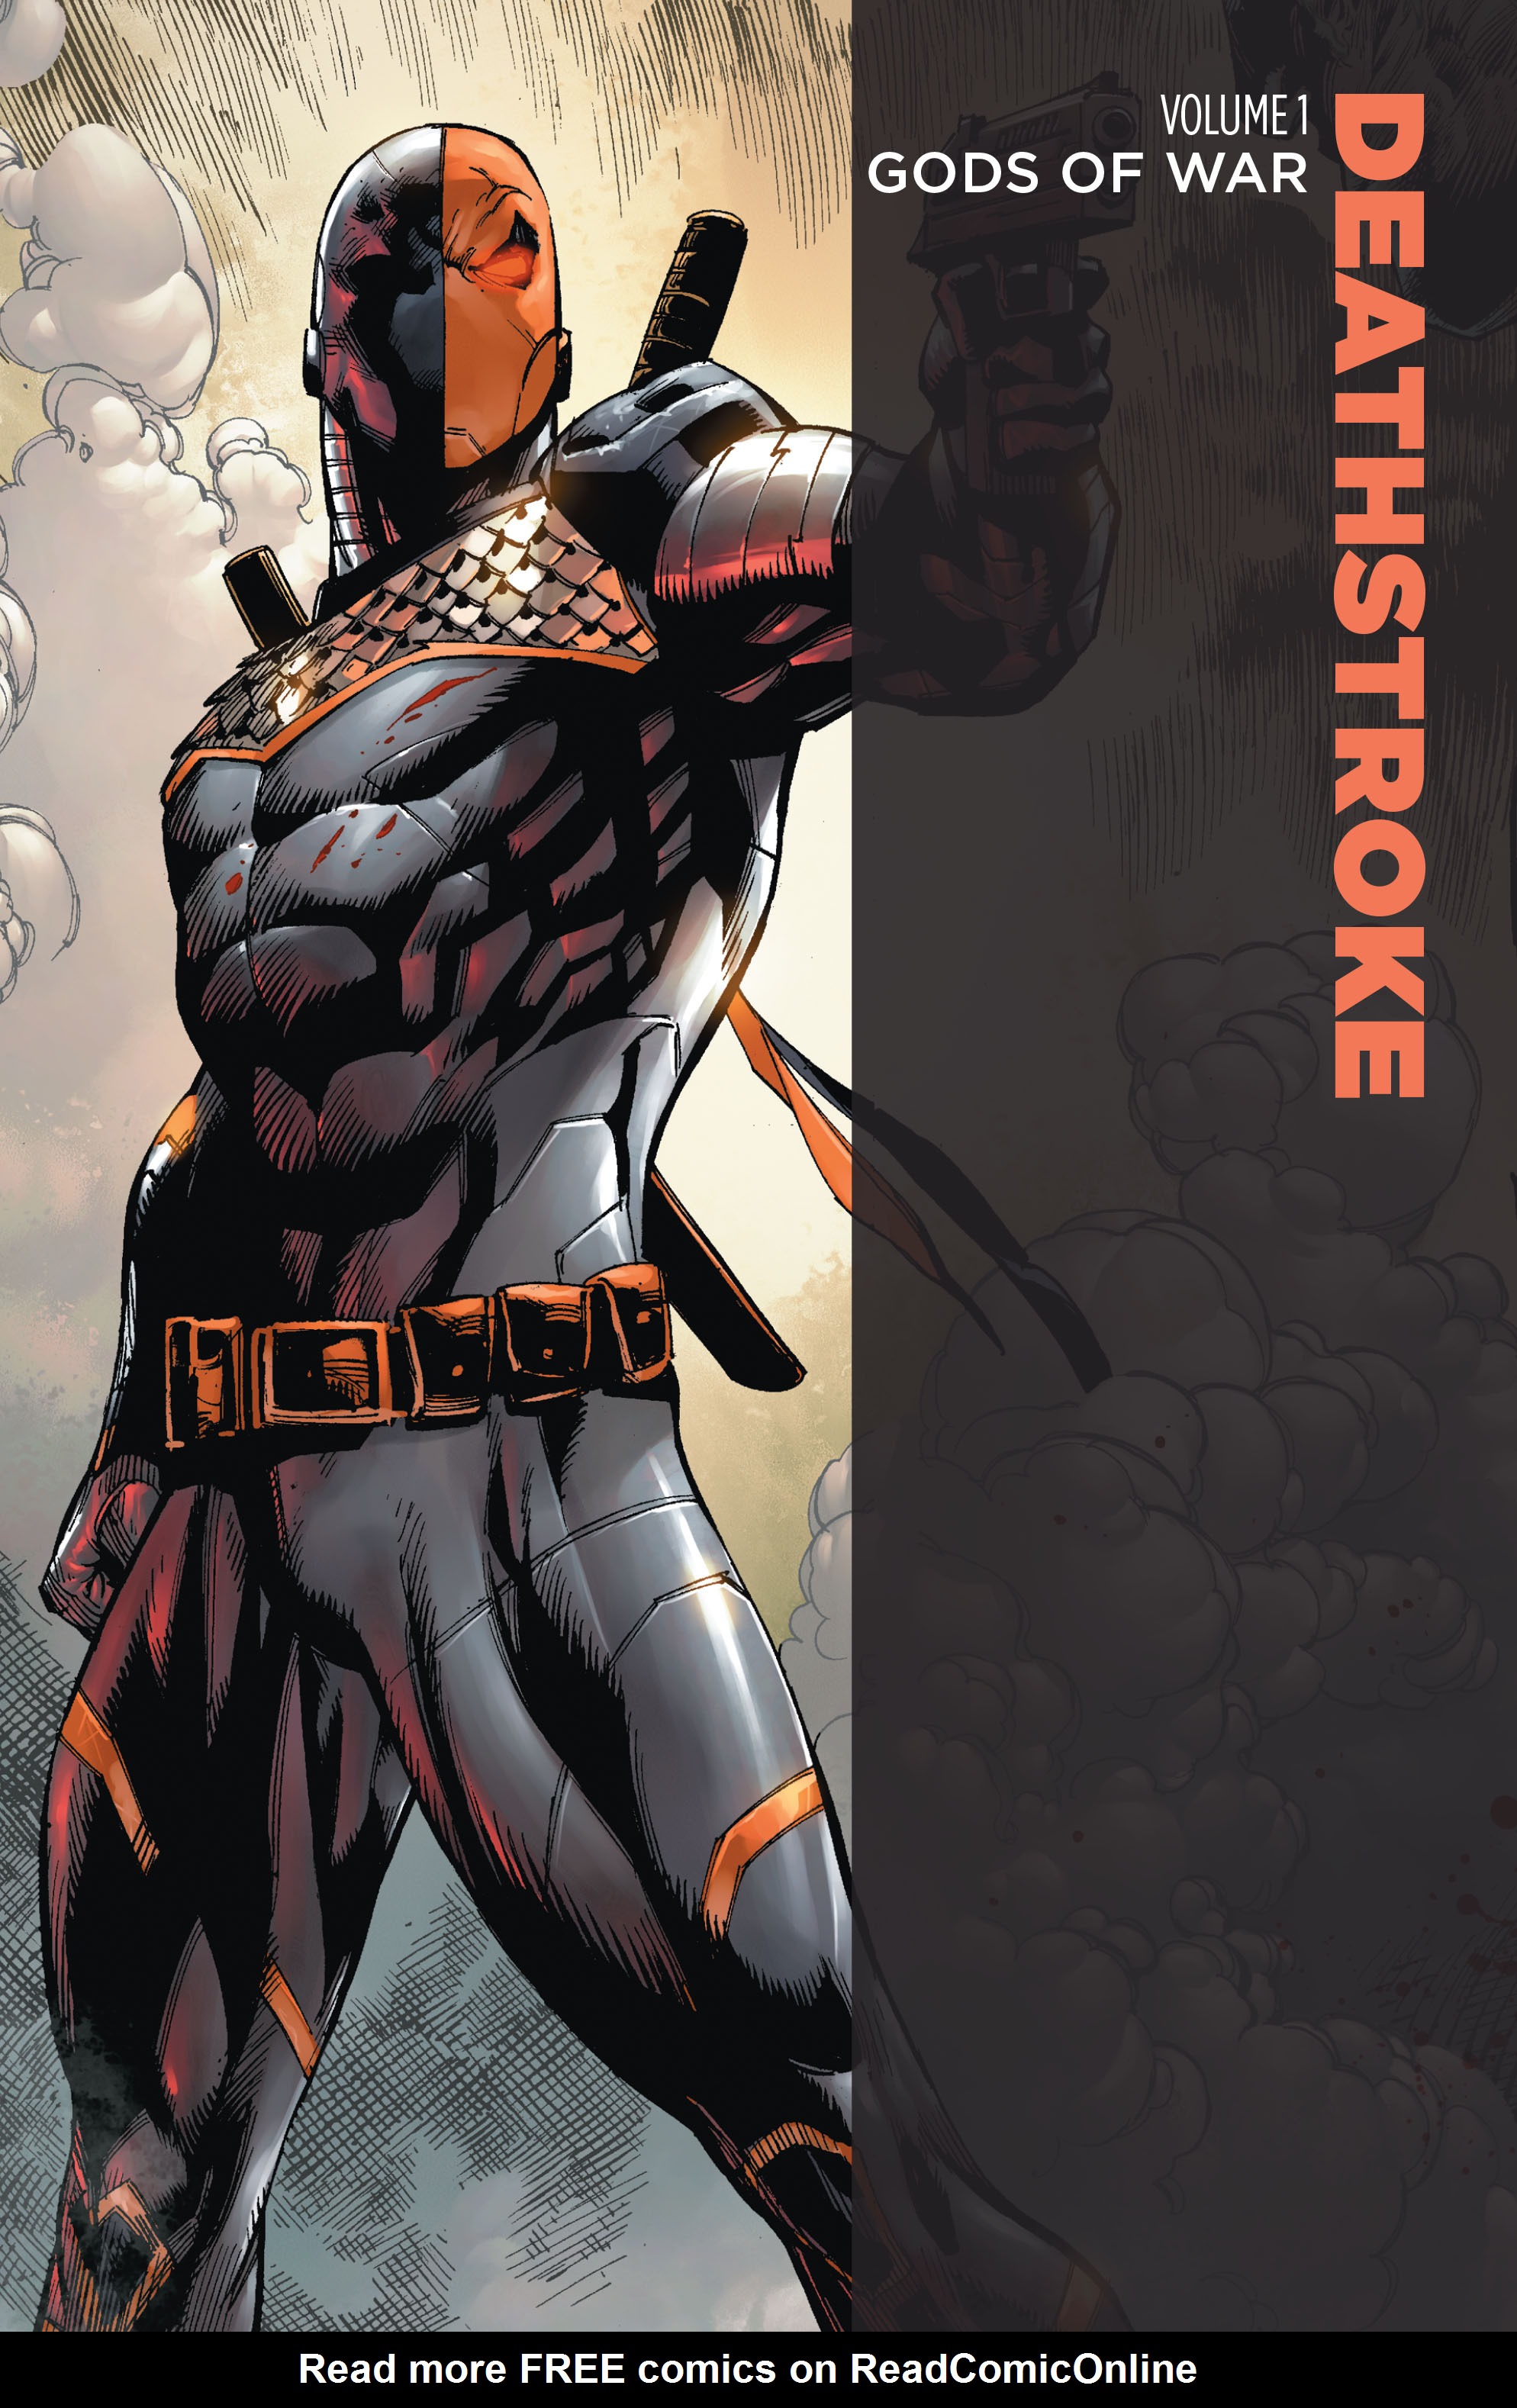 Read online Deathstroke: Gods of War comic -  Issue # TPB - 2